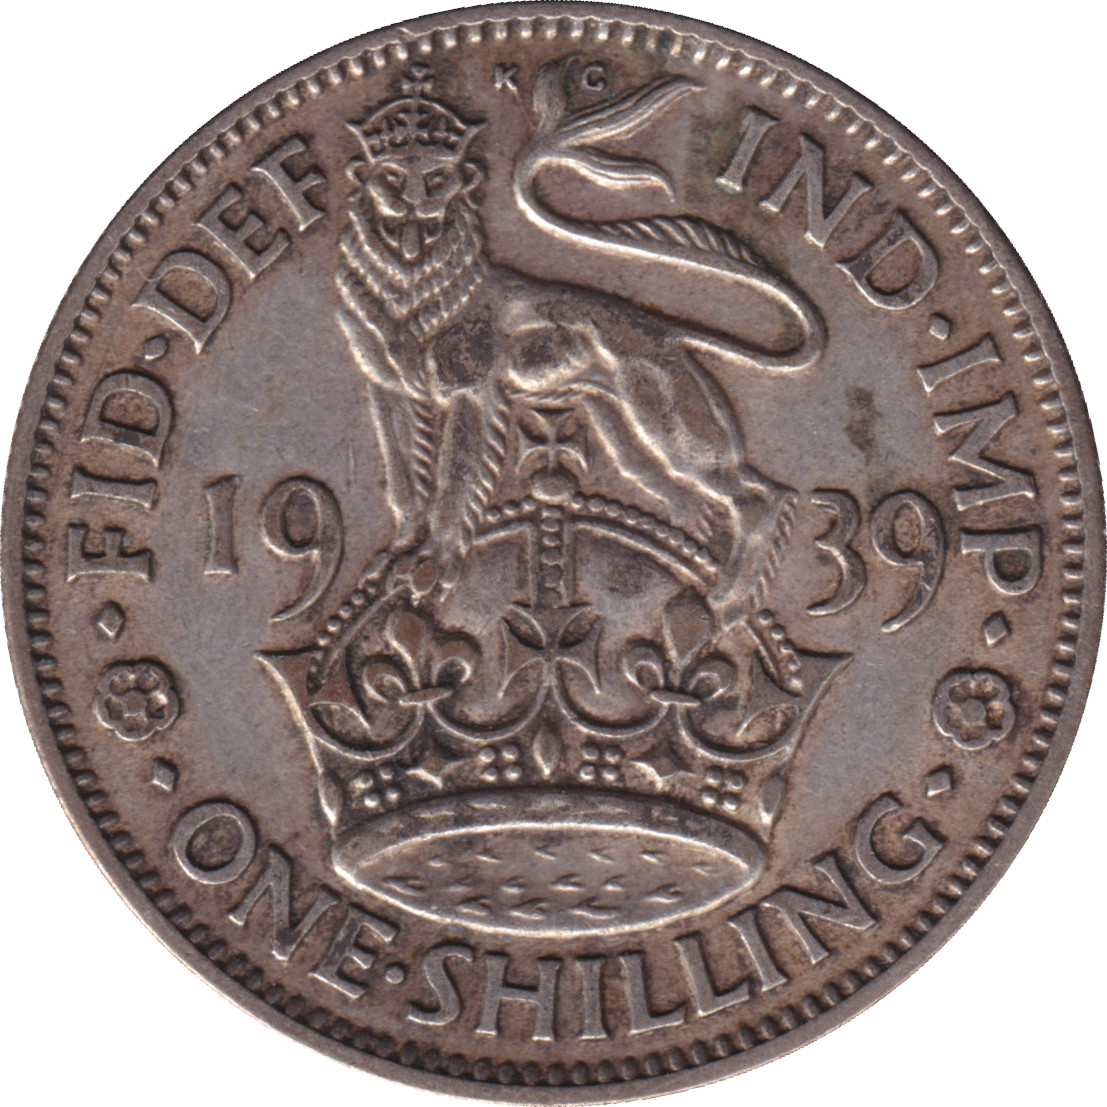 1 shilling - George VI - Ecosse